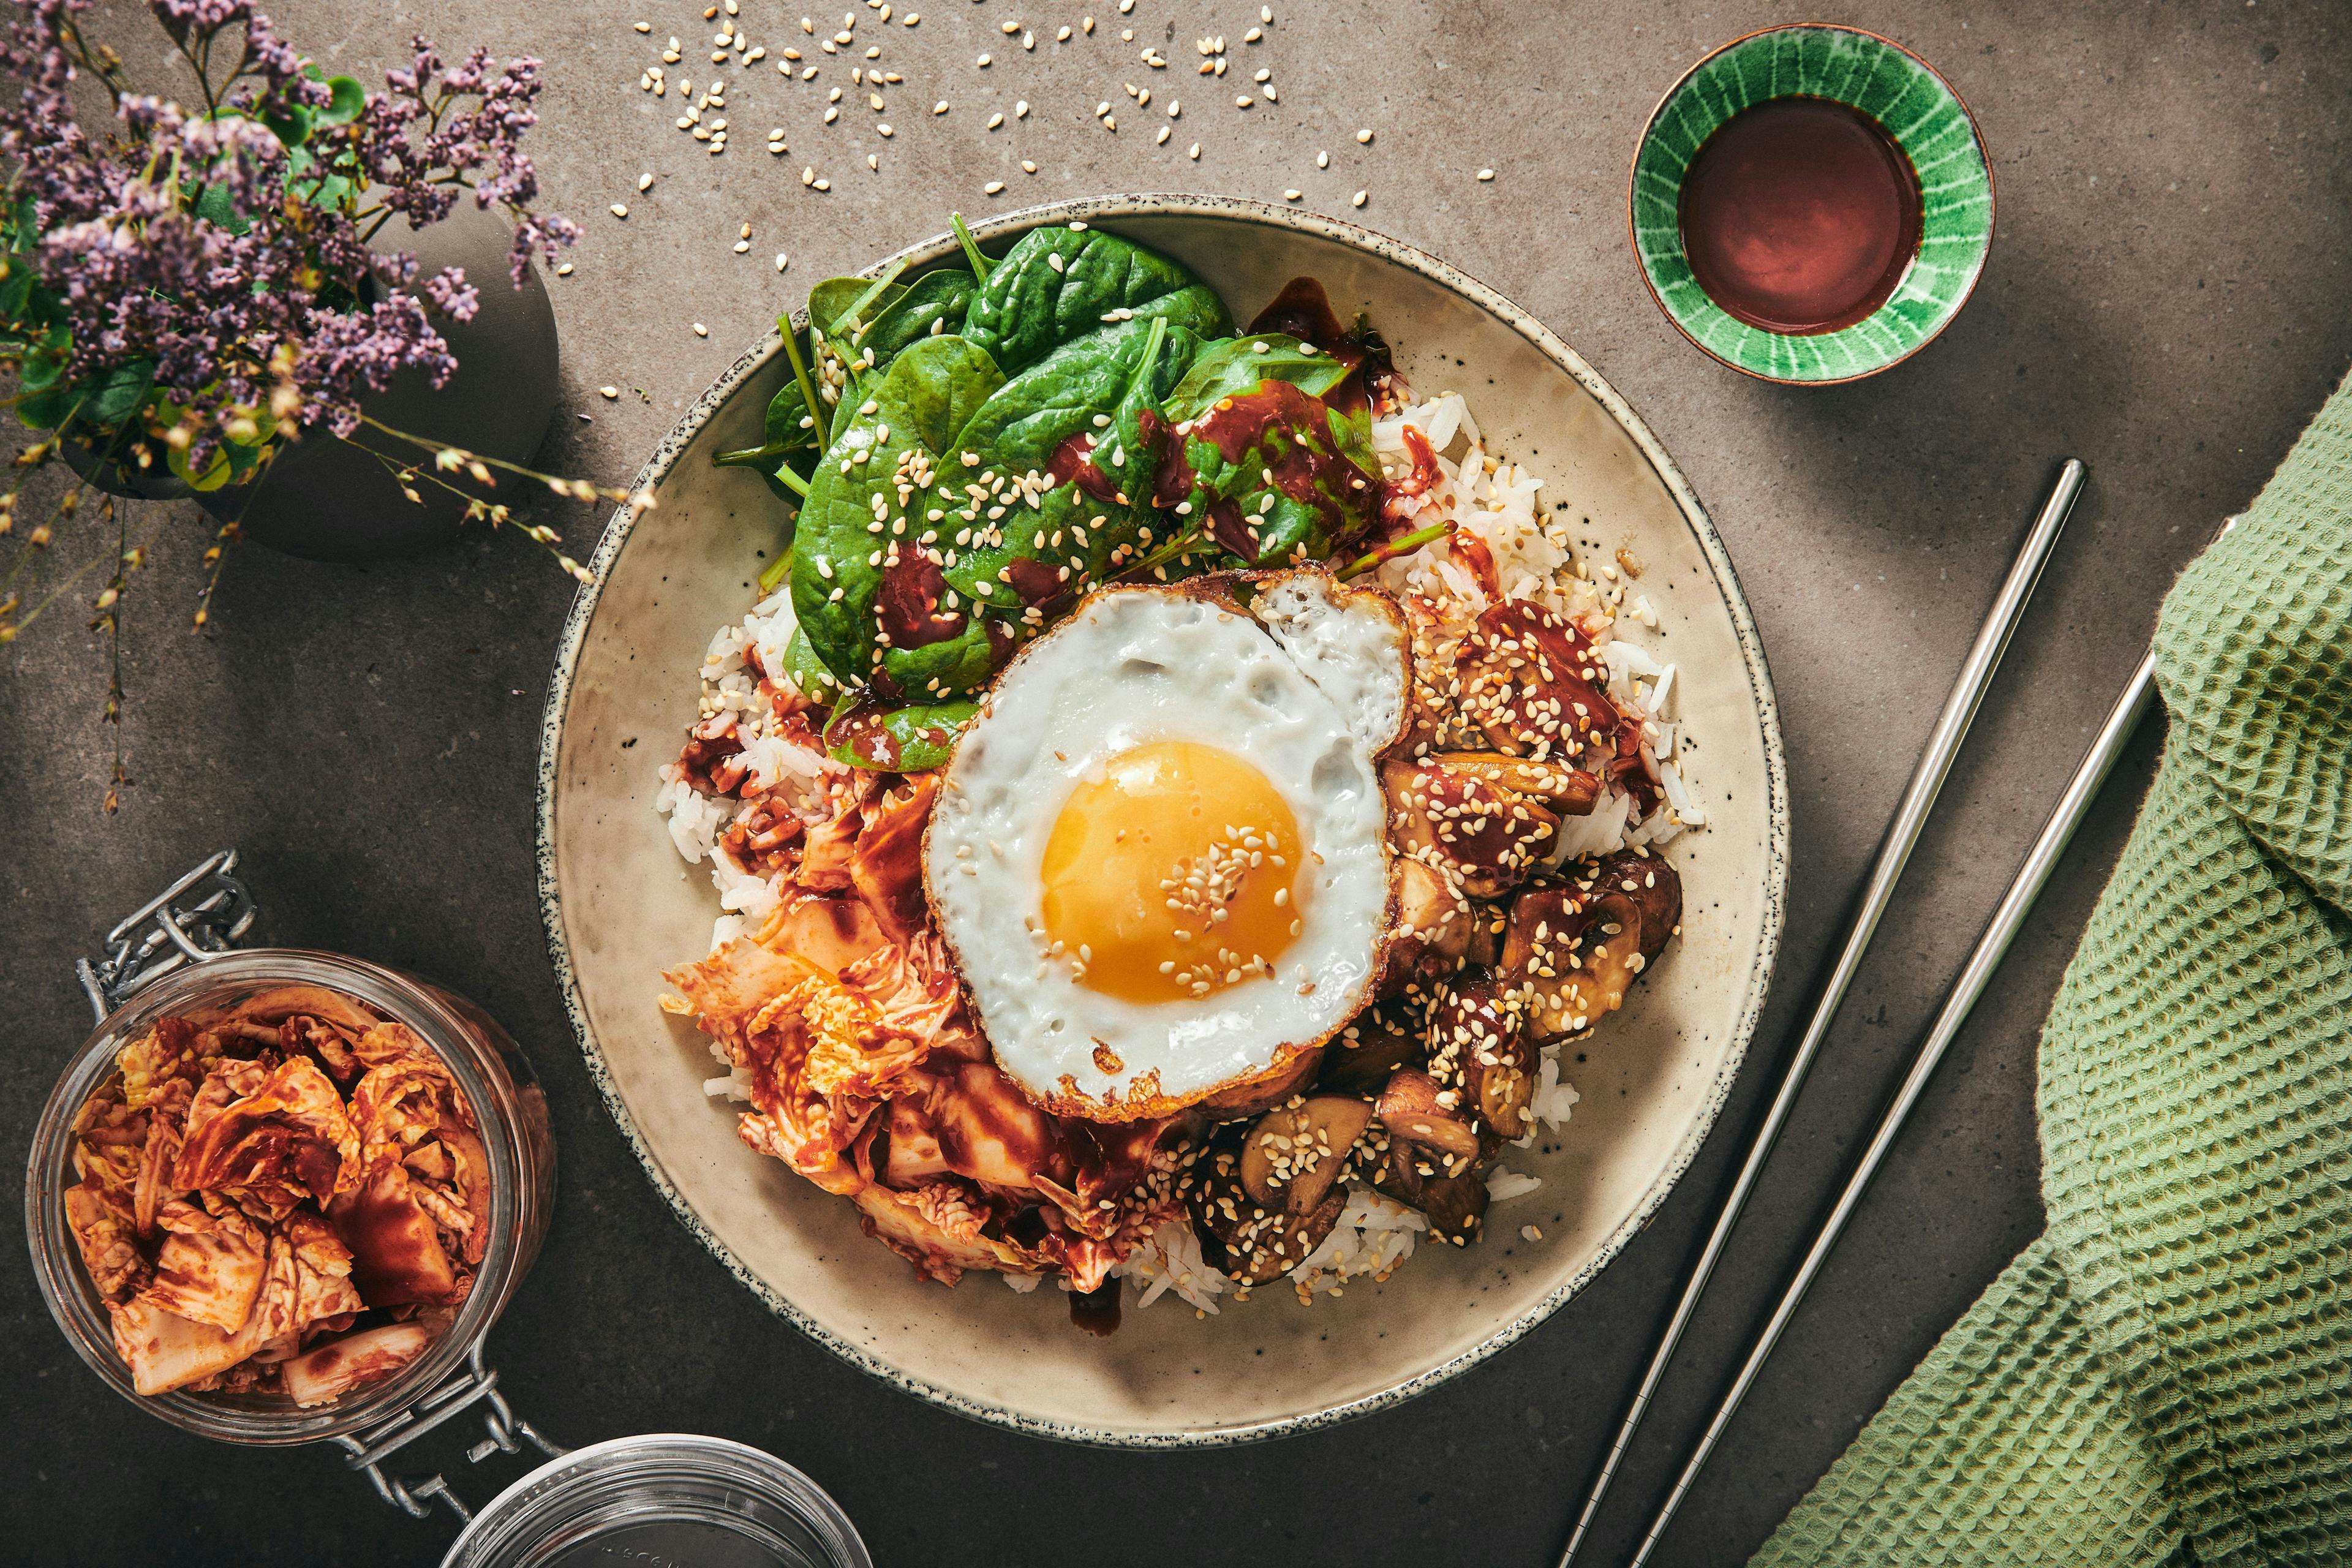 På billedet ses et eksempel på en koreansk ret, hvor sesamolien giver et smagsmæssigt løft til retten. Nemlig bibimbap med sojastegte svampe, kimchi og stegt æg.